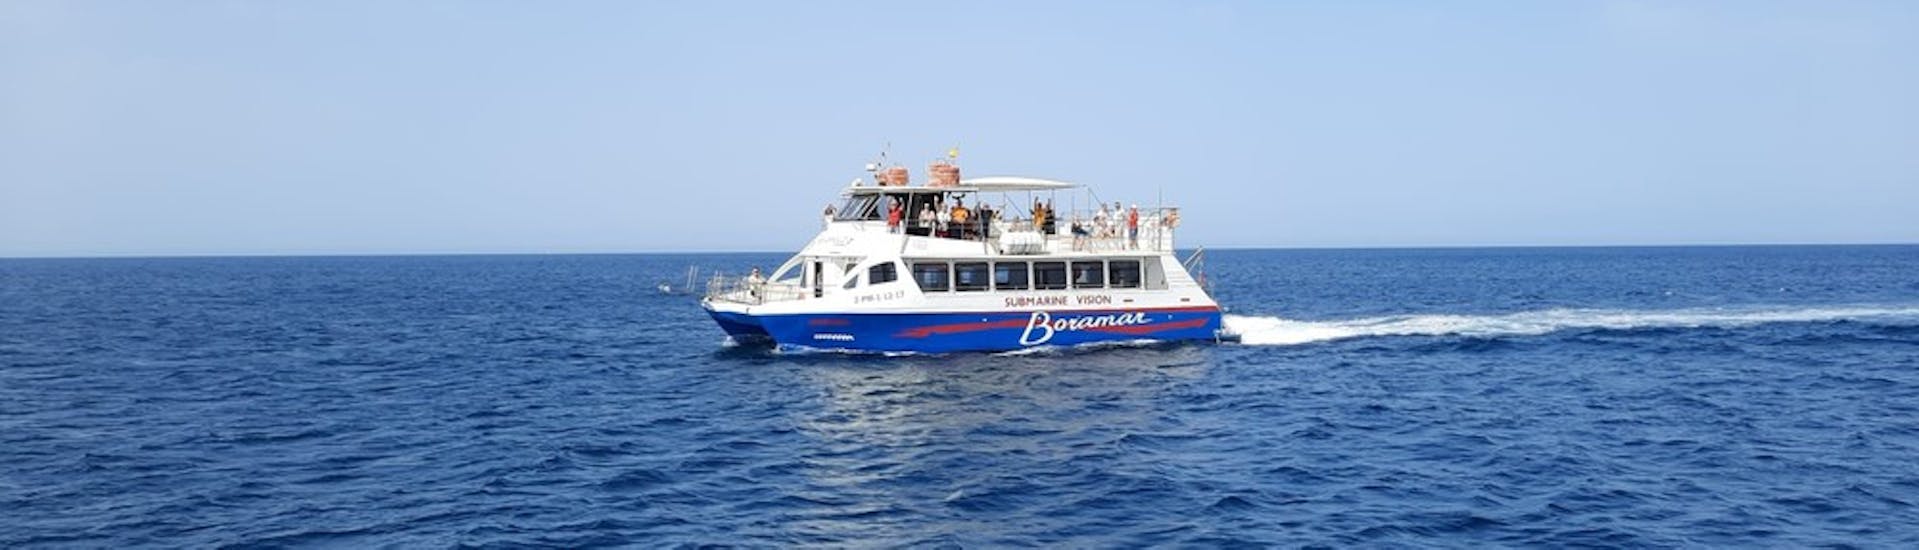 Gita in catamarano da Jávea (Xàbia) con visita turistica con Boramar Denia.